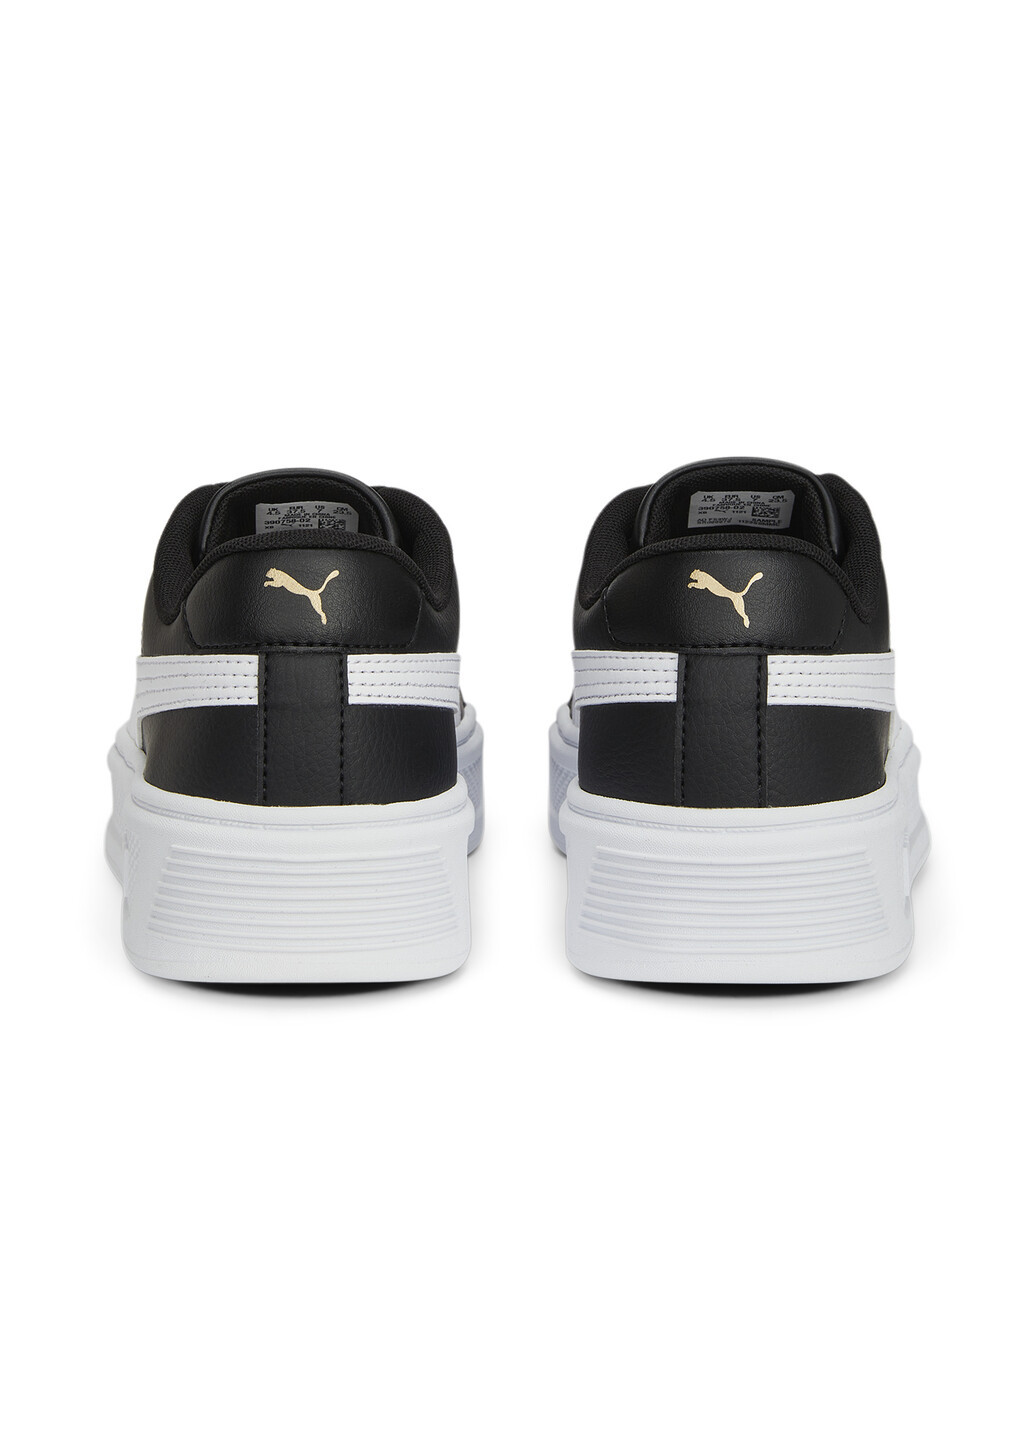 Черные кроссовки smash platform v3 sneakers women Puma